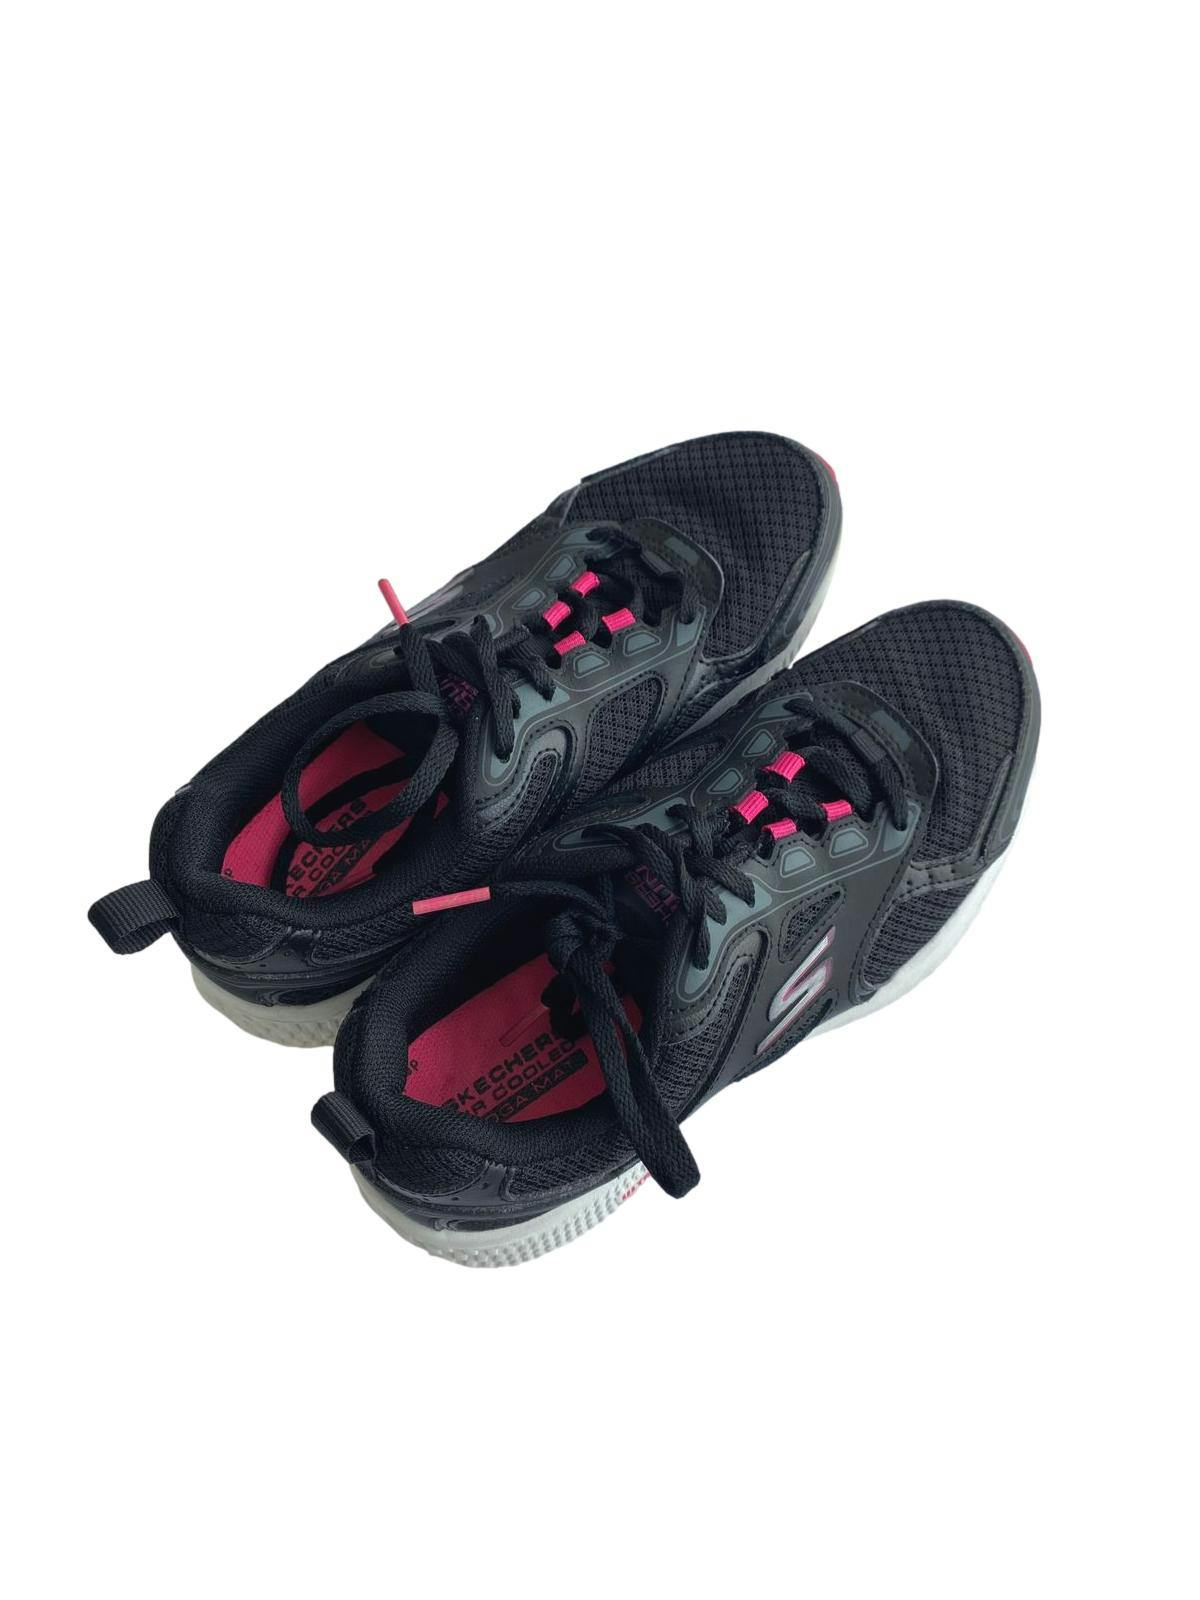 Zapatillas Skechers negras con entresuela blanca y detalles fucsia. Largo: 26cm 